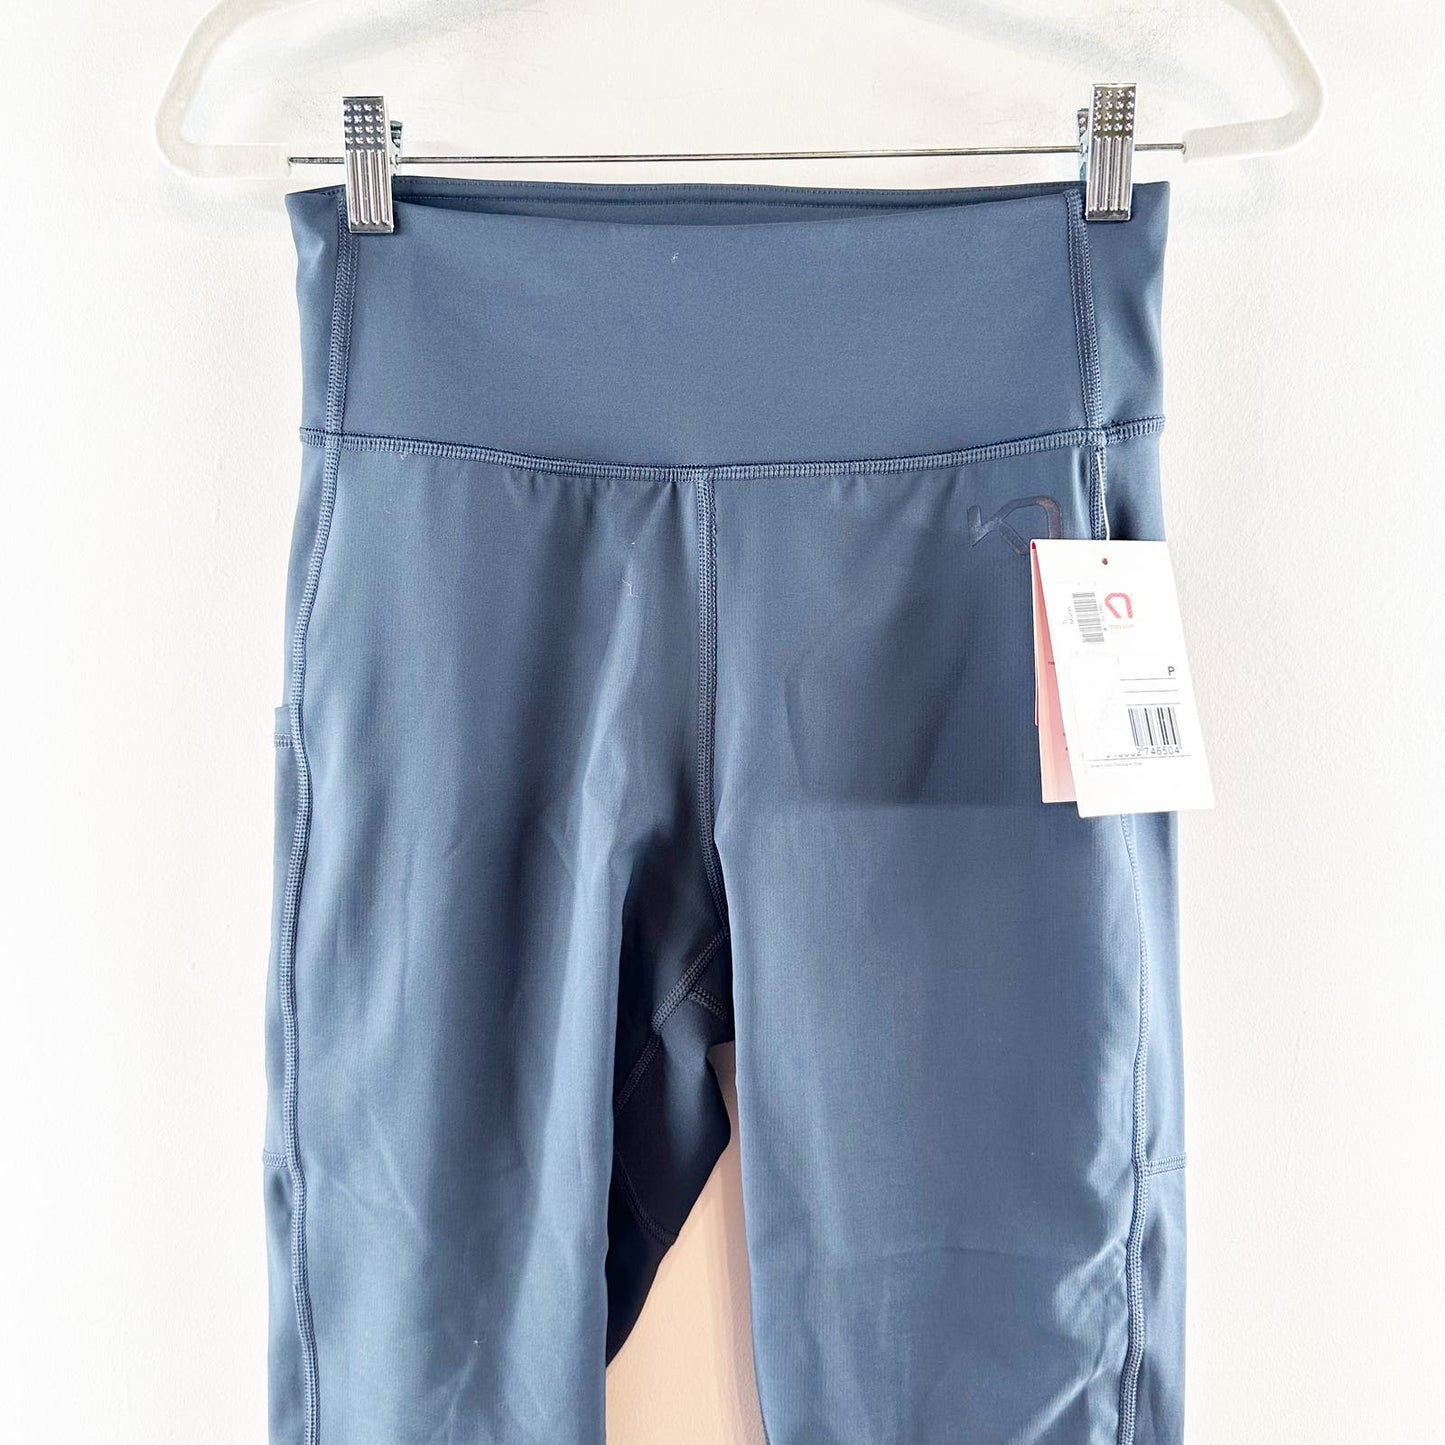 Kari Traa High Rise Side Pocket Baselayer Pants Leggings Navy Blue Small